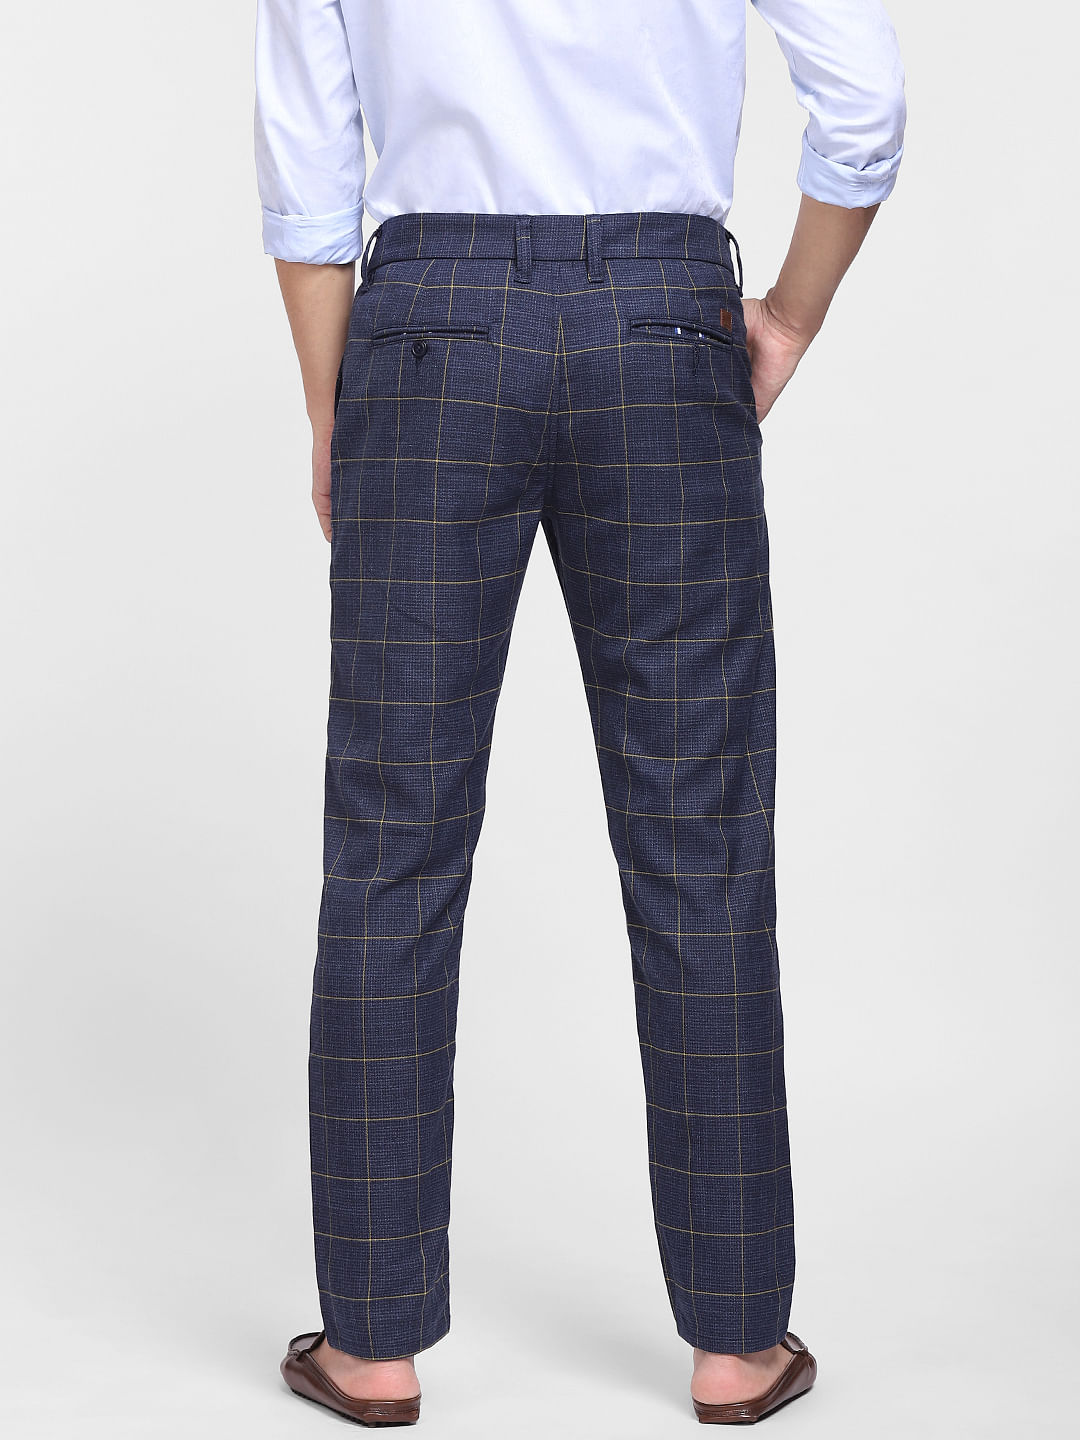 Men's Classic Pants | Men's Casual Pants | Men's Plaid Pants | Plaid Blue  Pants - Brand - Aliexpress